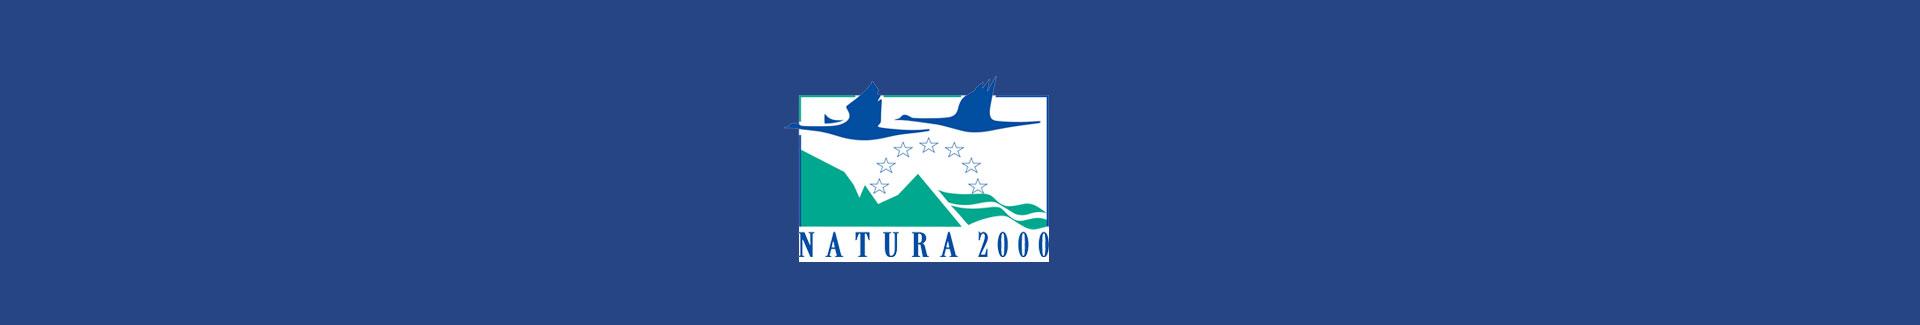 Bannière de la page Natura 2000 - logo Natura 2000